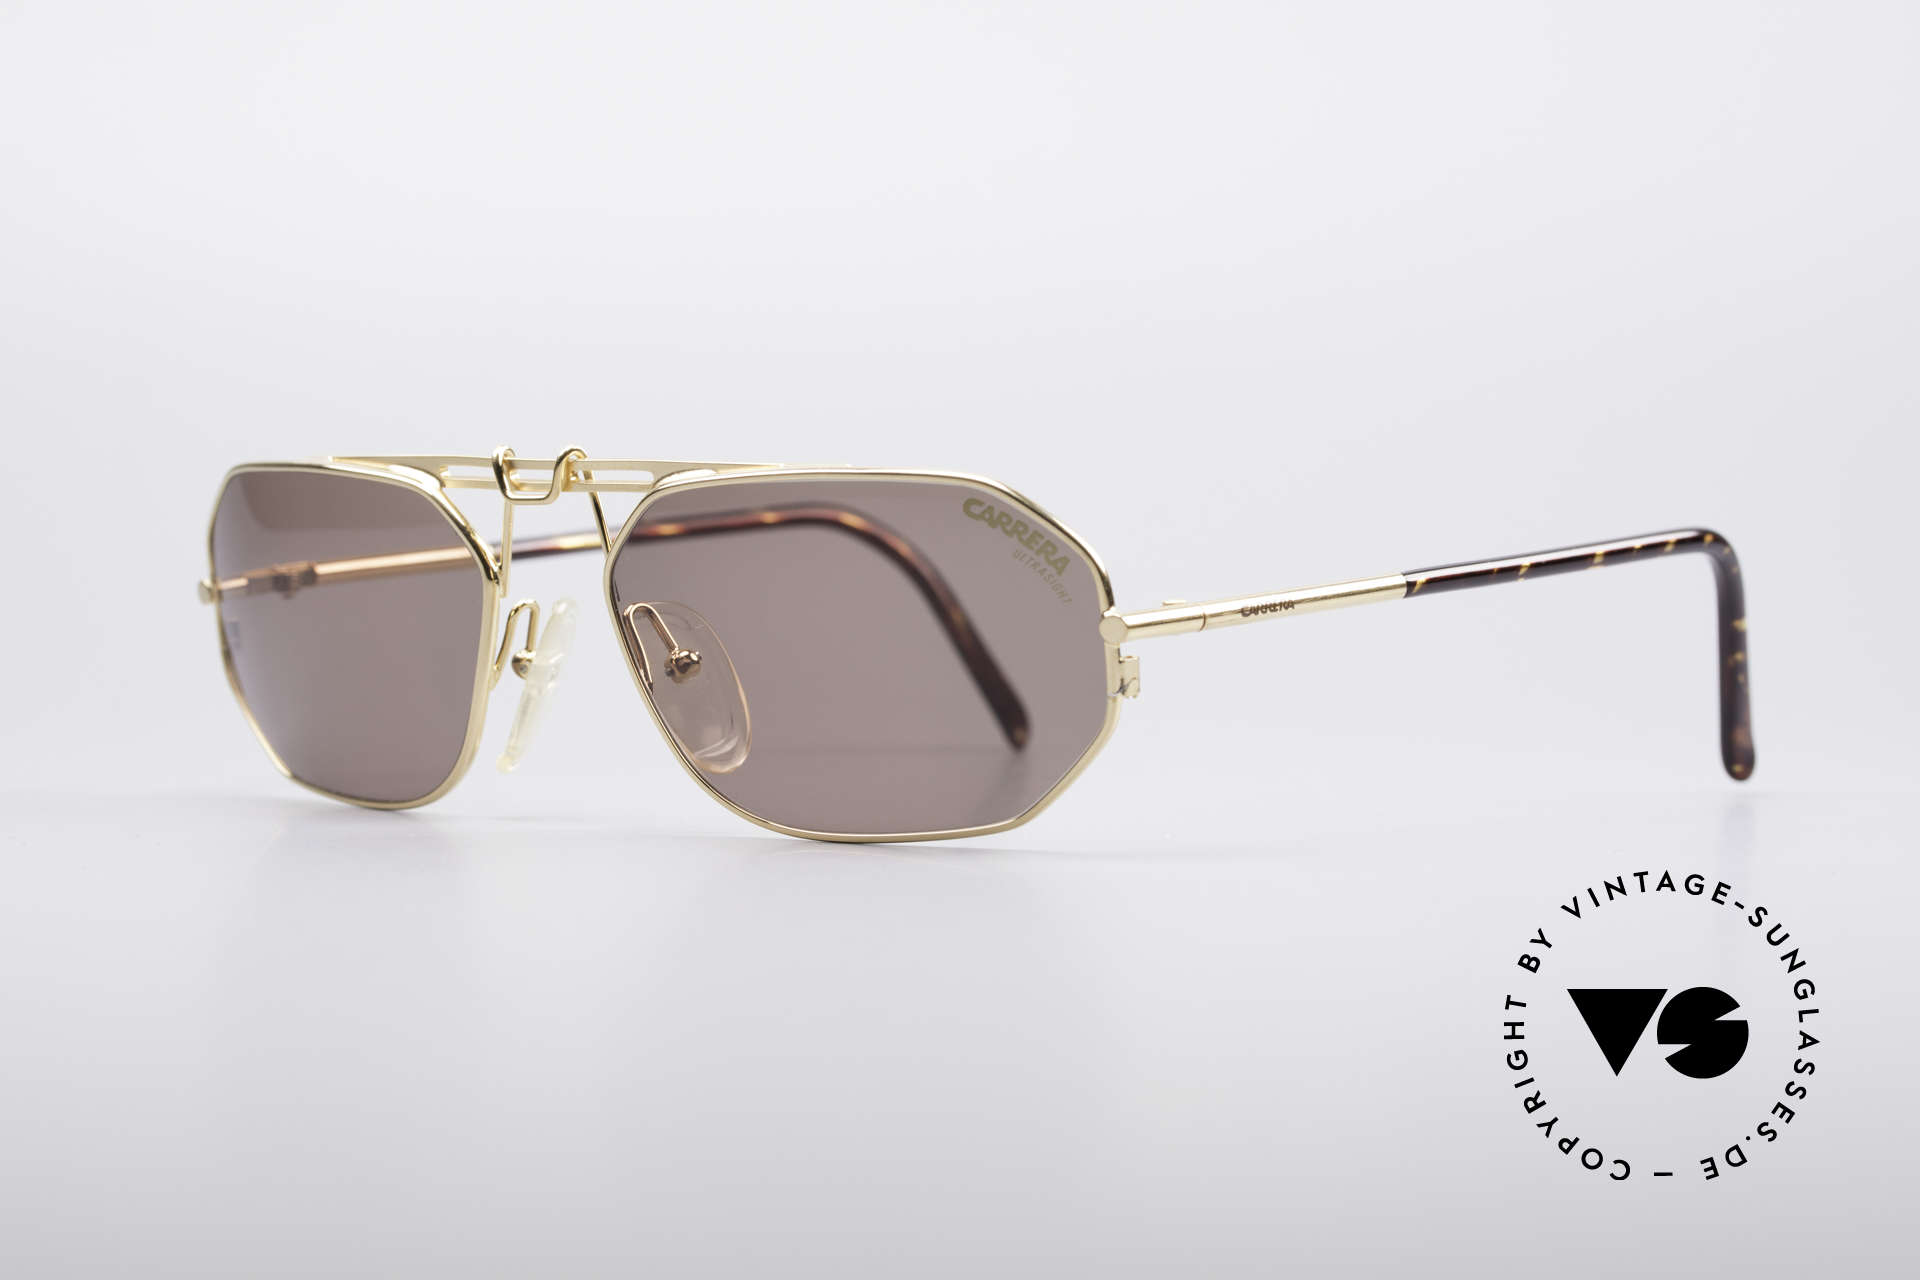 Sonnenbrillen Carrera 5498 90er Designer Sonnenbrille 